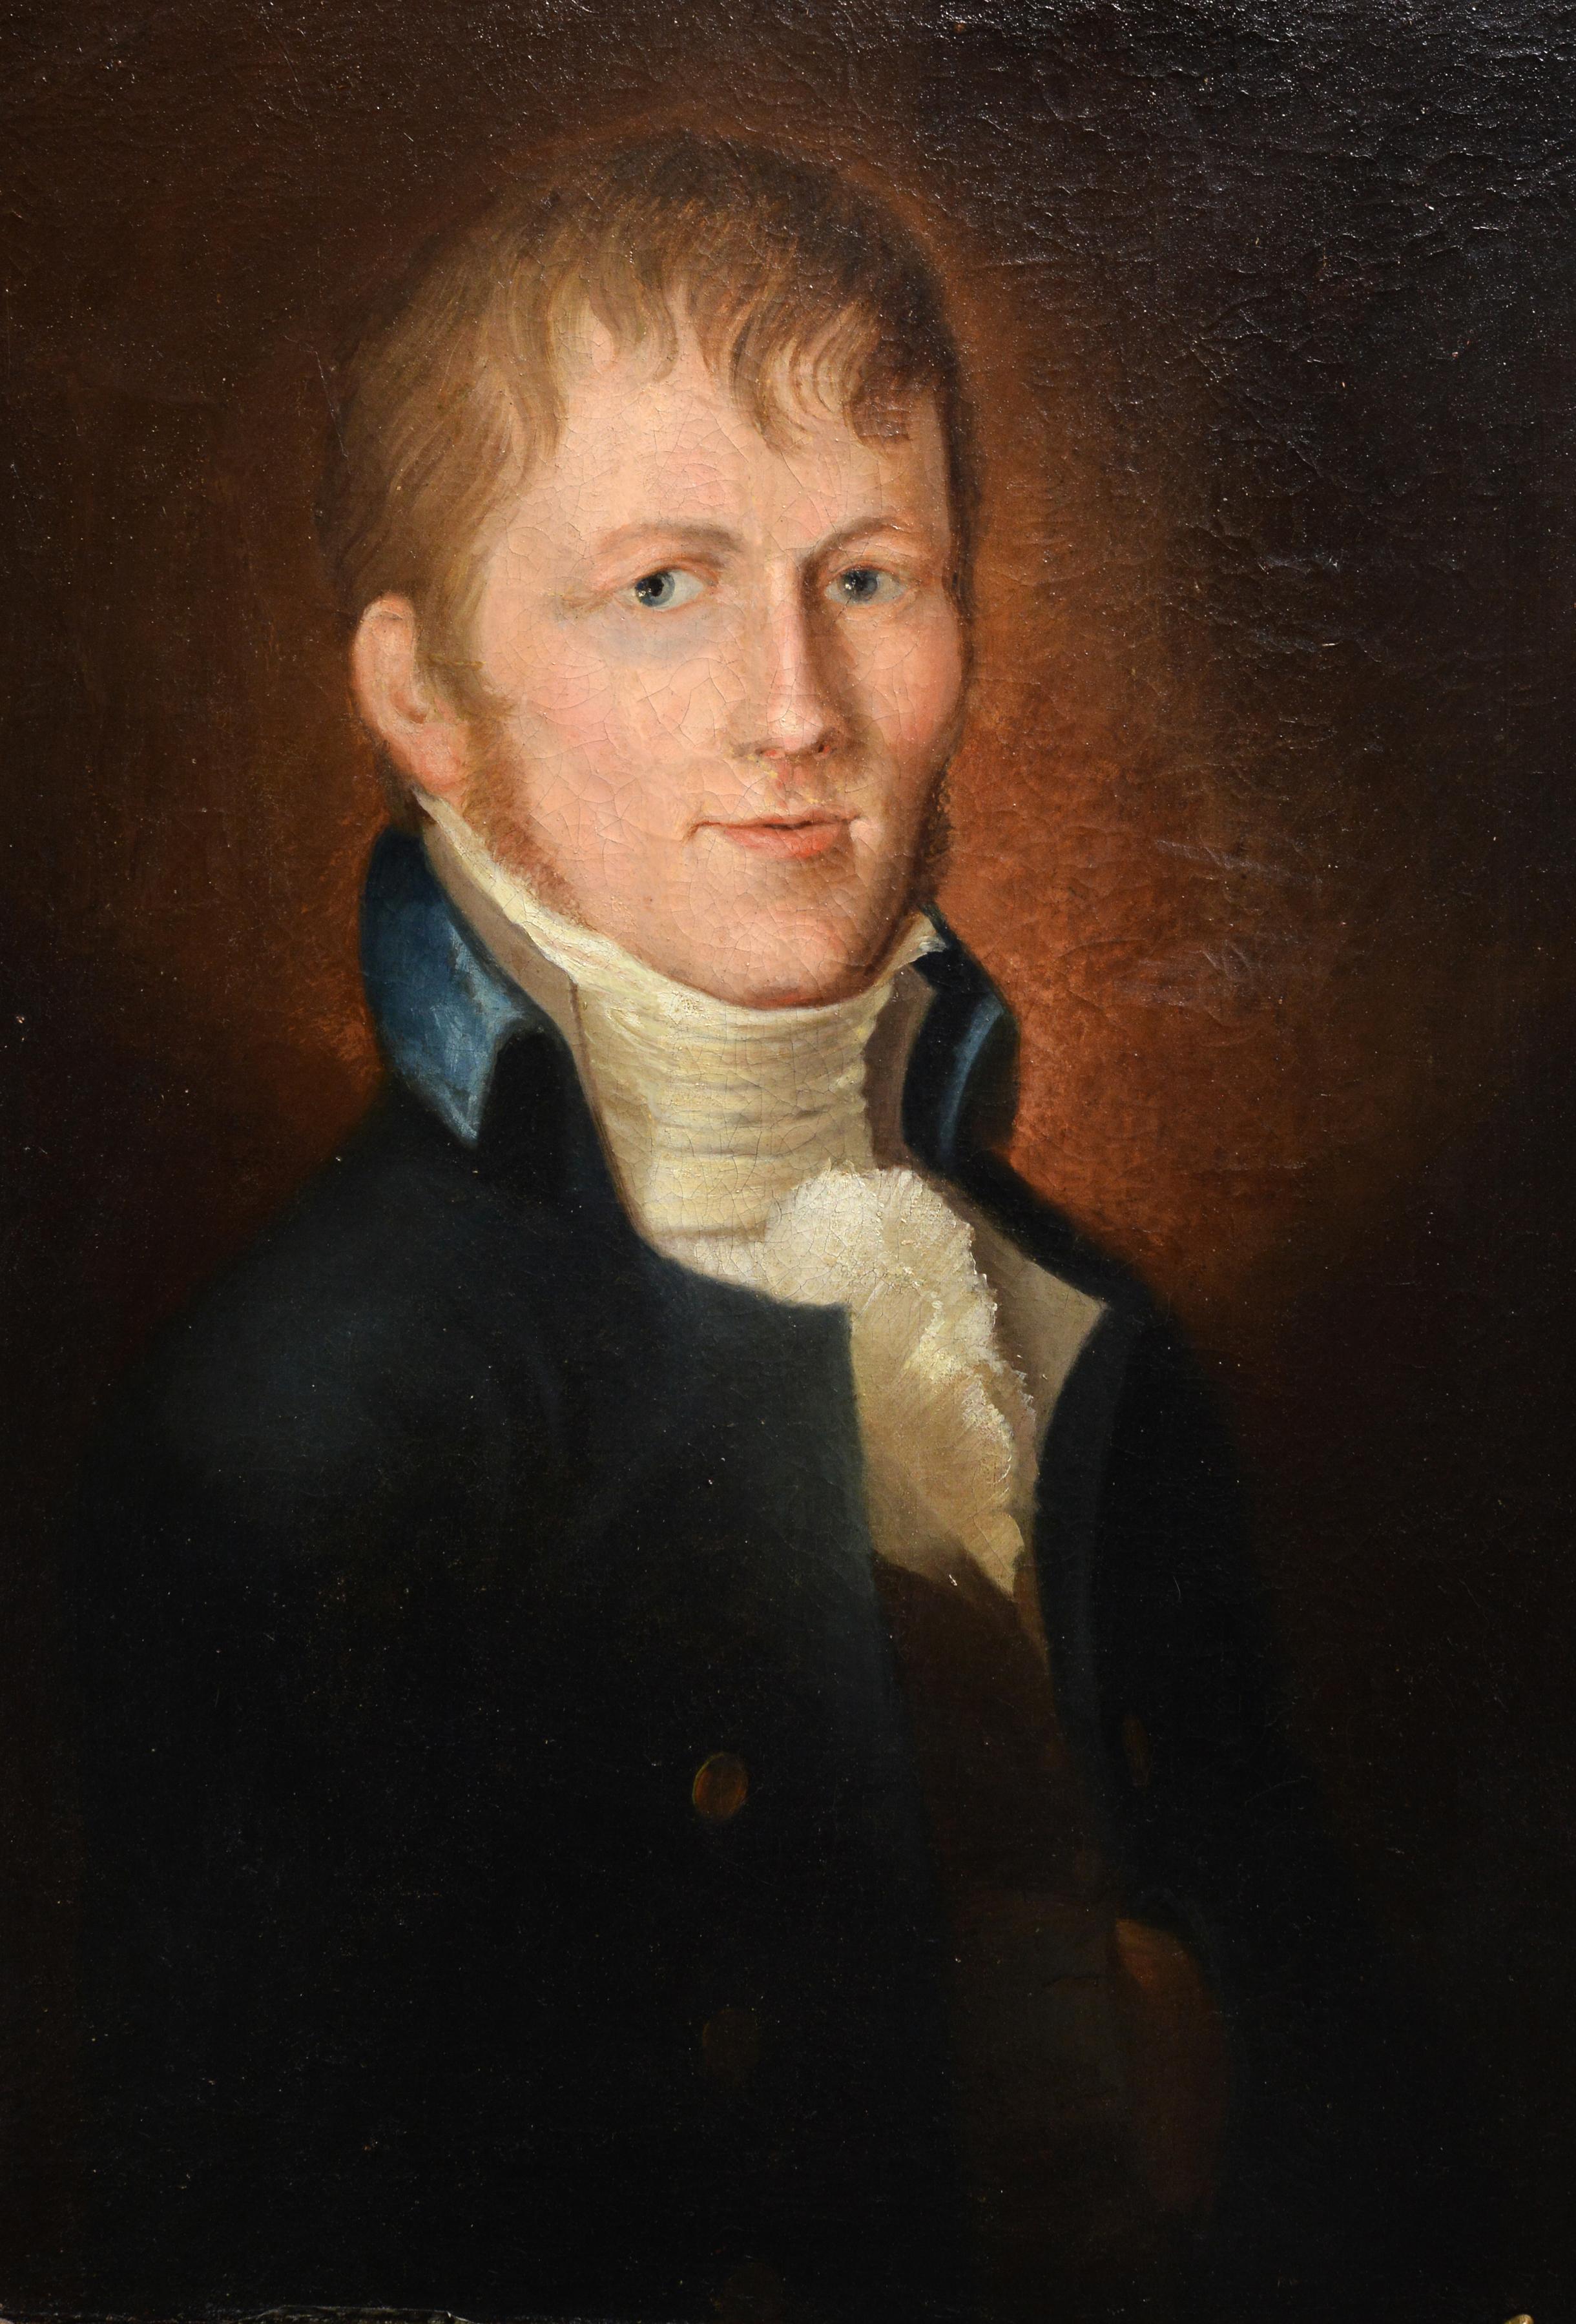 Porträt eines jungen Gentleman von dem amerikanischen Samuel Morse, Erfinder des Telegraph Code 19C – Painting von Samuel Finley Breese Morse